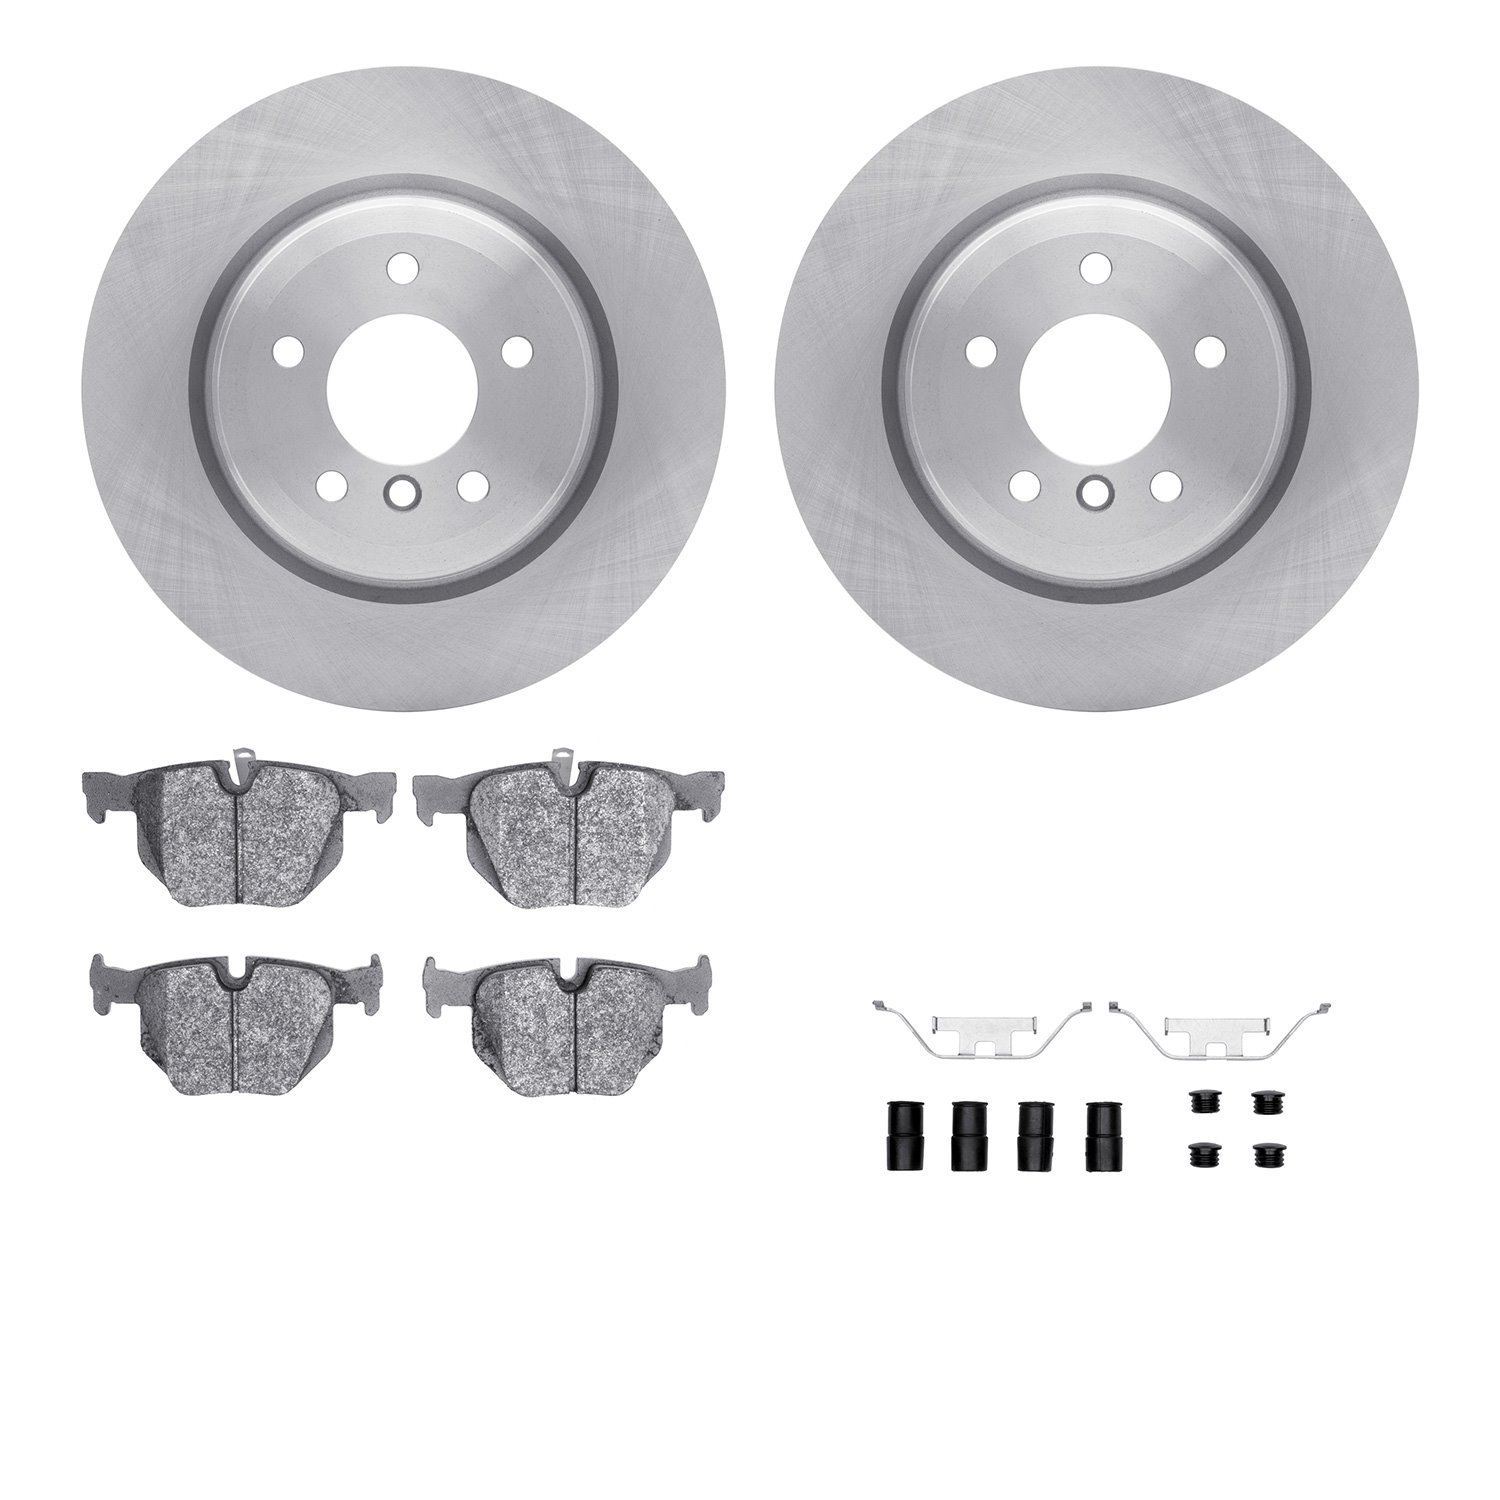 6612-31271 Brake Rotors w/5000 Euro Ceramic Brake Pads Kit with Hardware, 2006-2015 BMW, Position: Rear